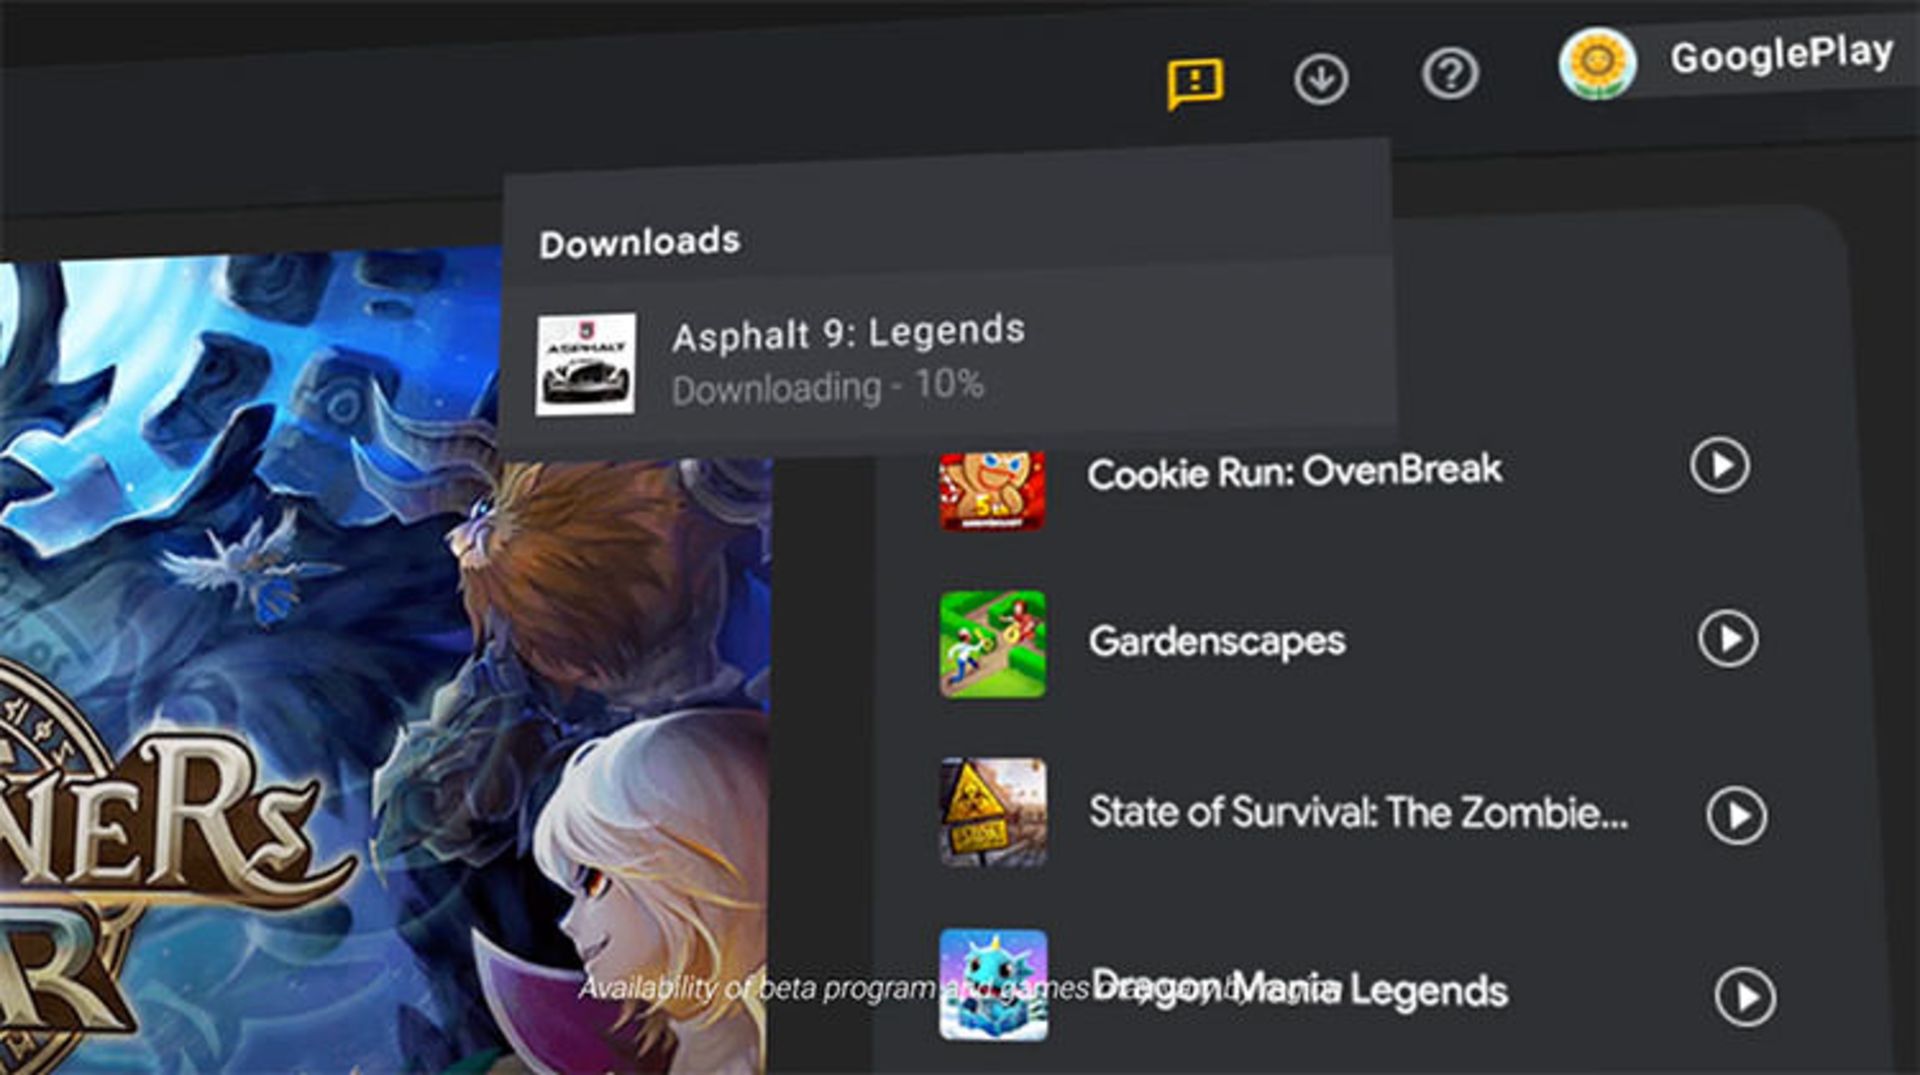 دانلود بازی Asphalt 9 در نسخه ویندوزی Google Play Games